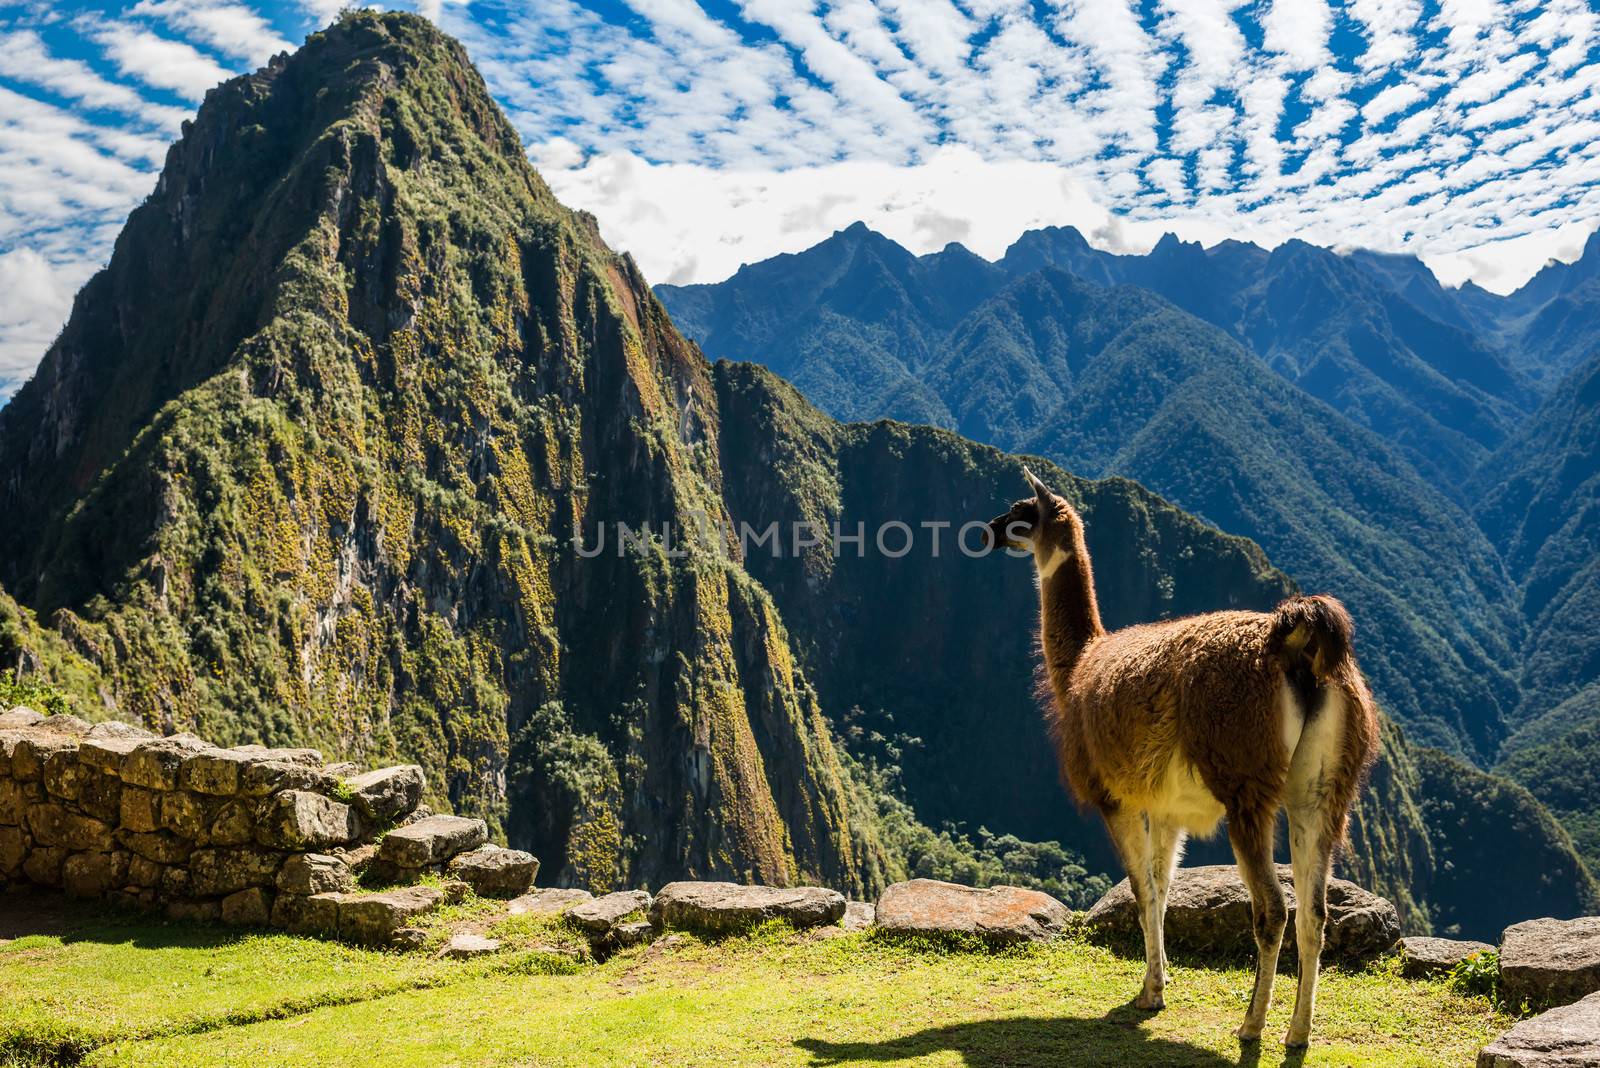 Llama at Machu Picchu, Incas ruins in the peruvian Andes at Cuzco Peru